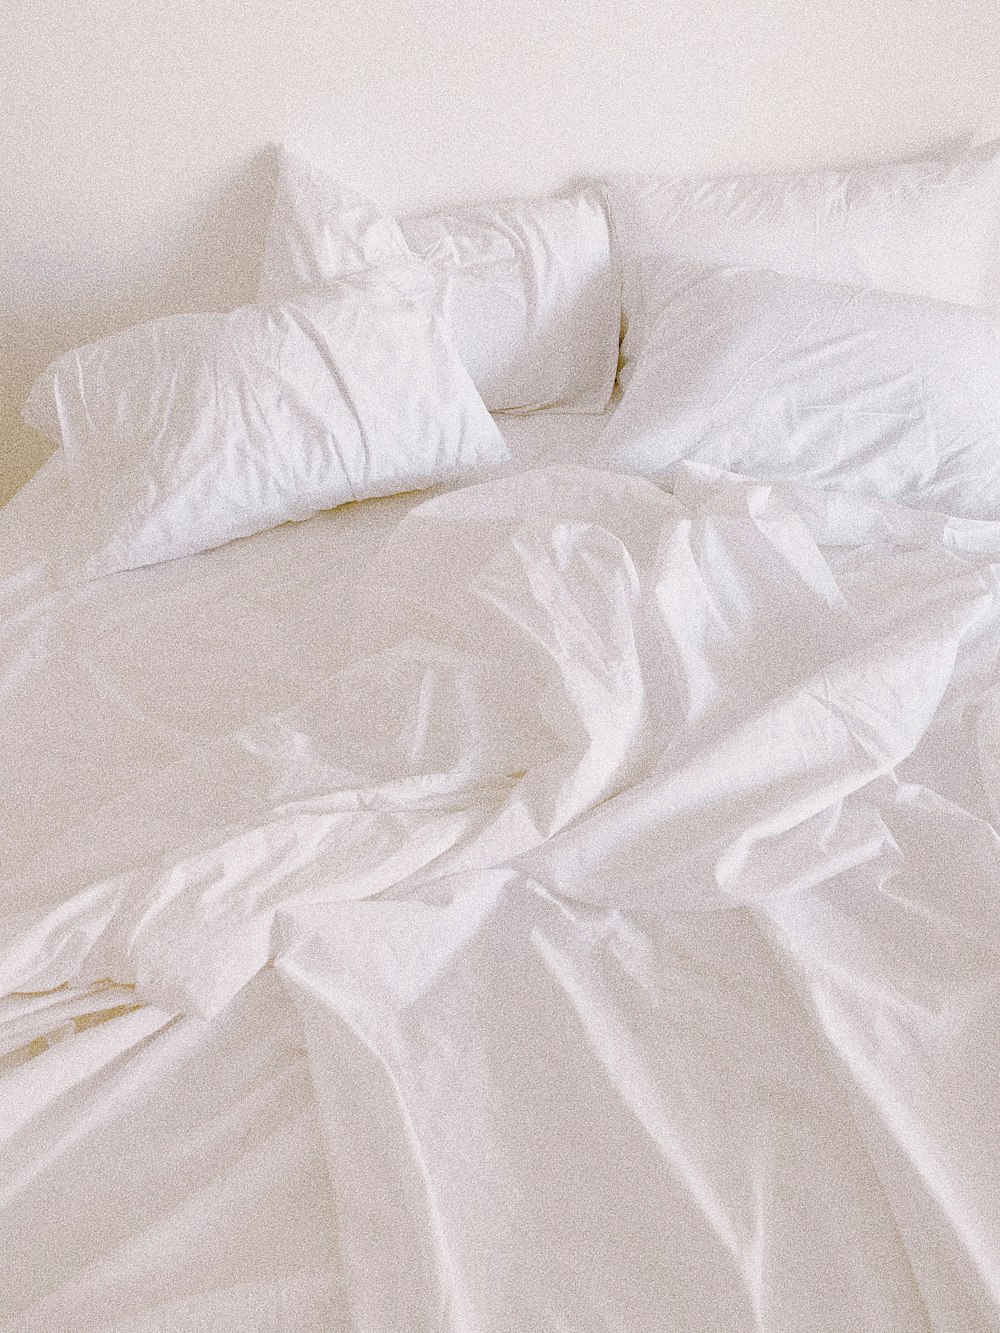 travesseiro branco da cama na cama